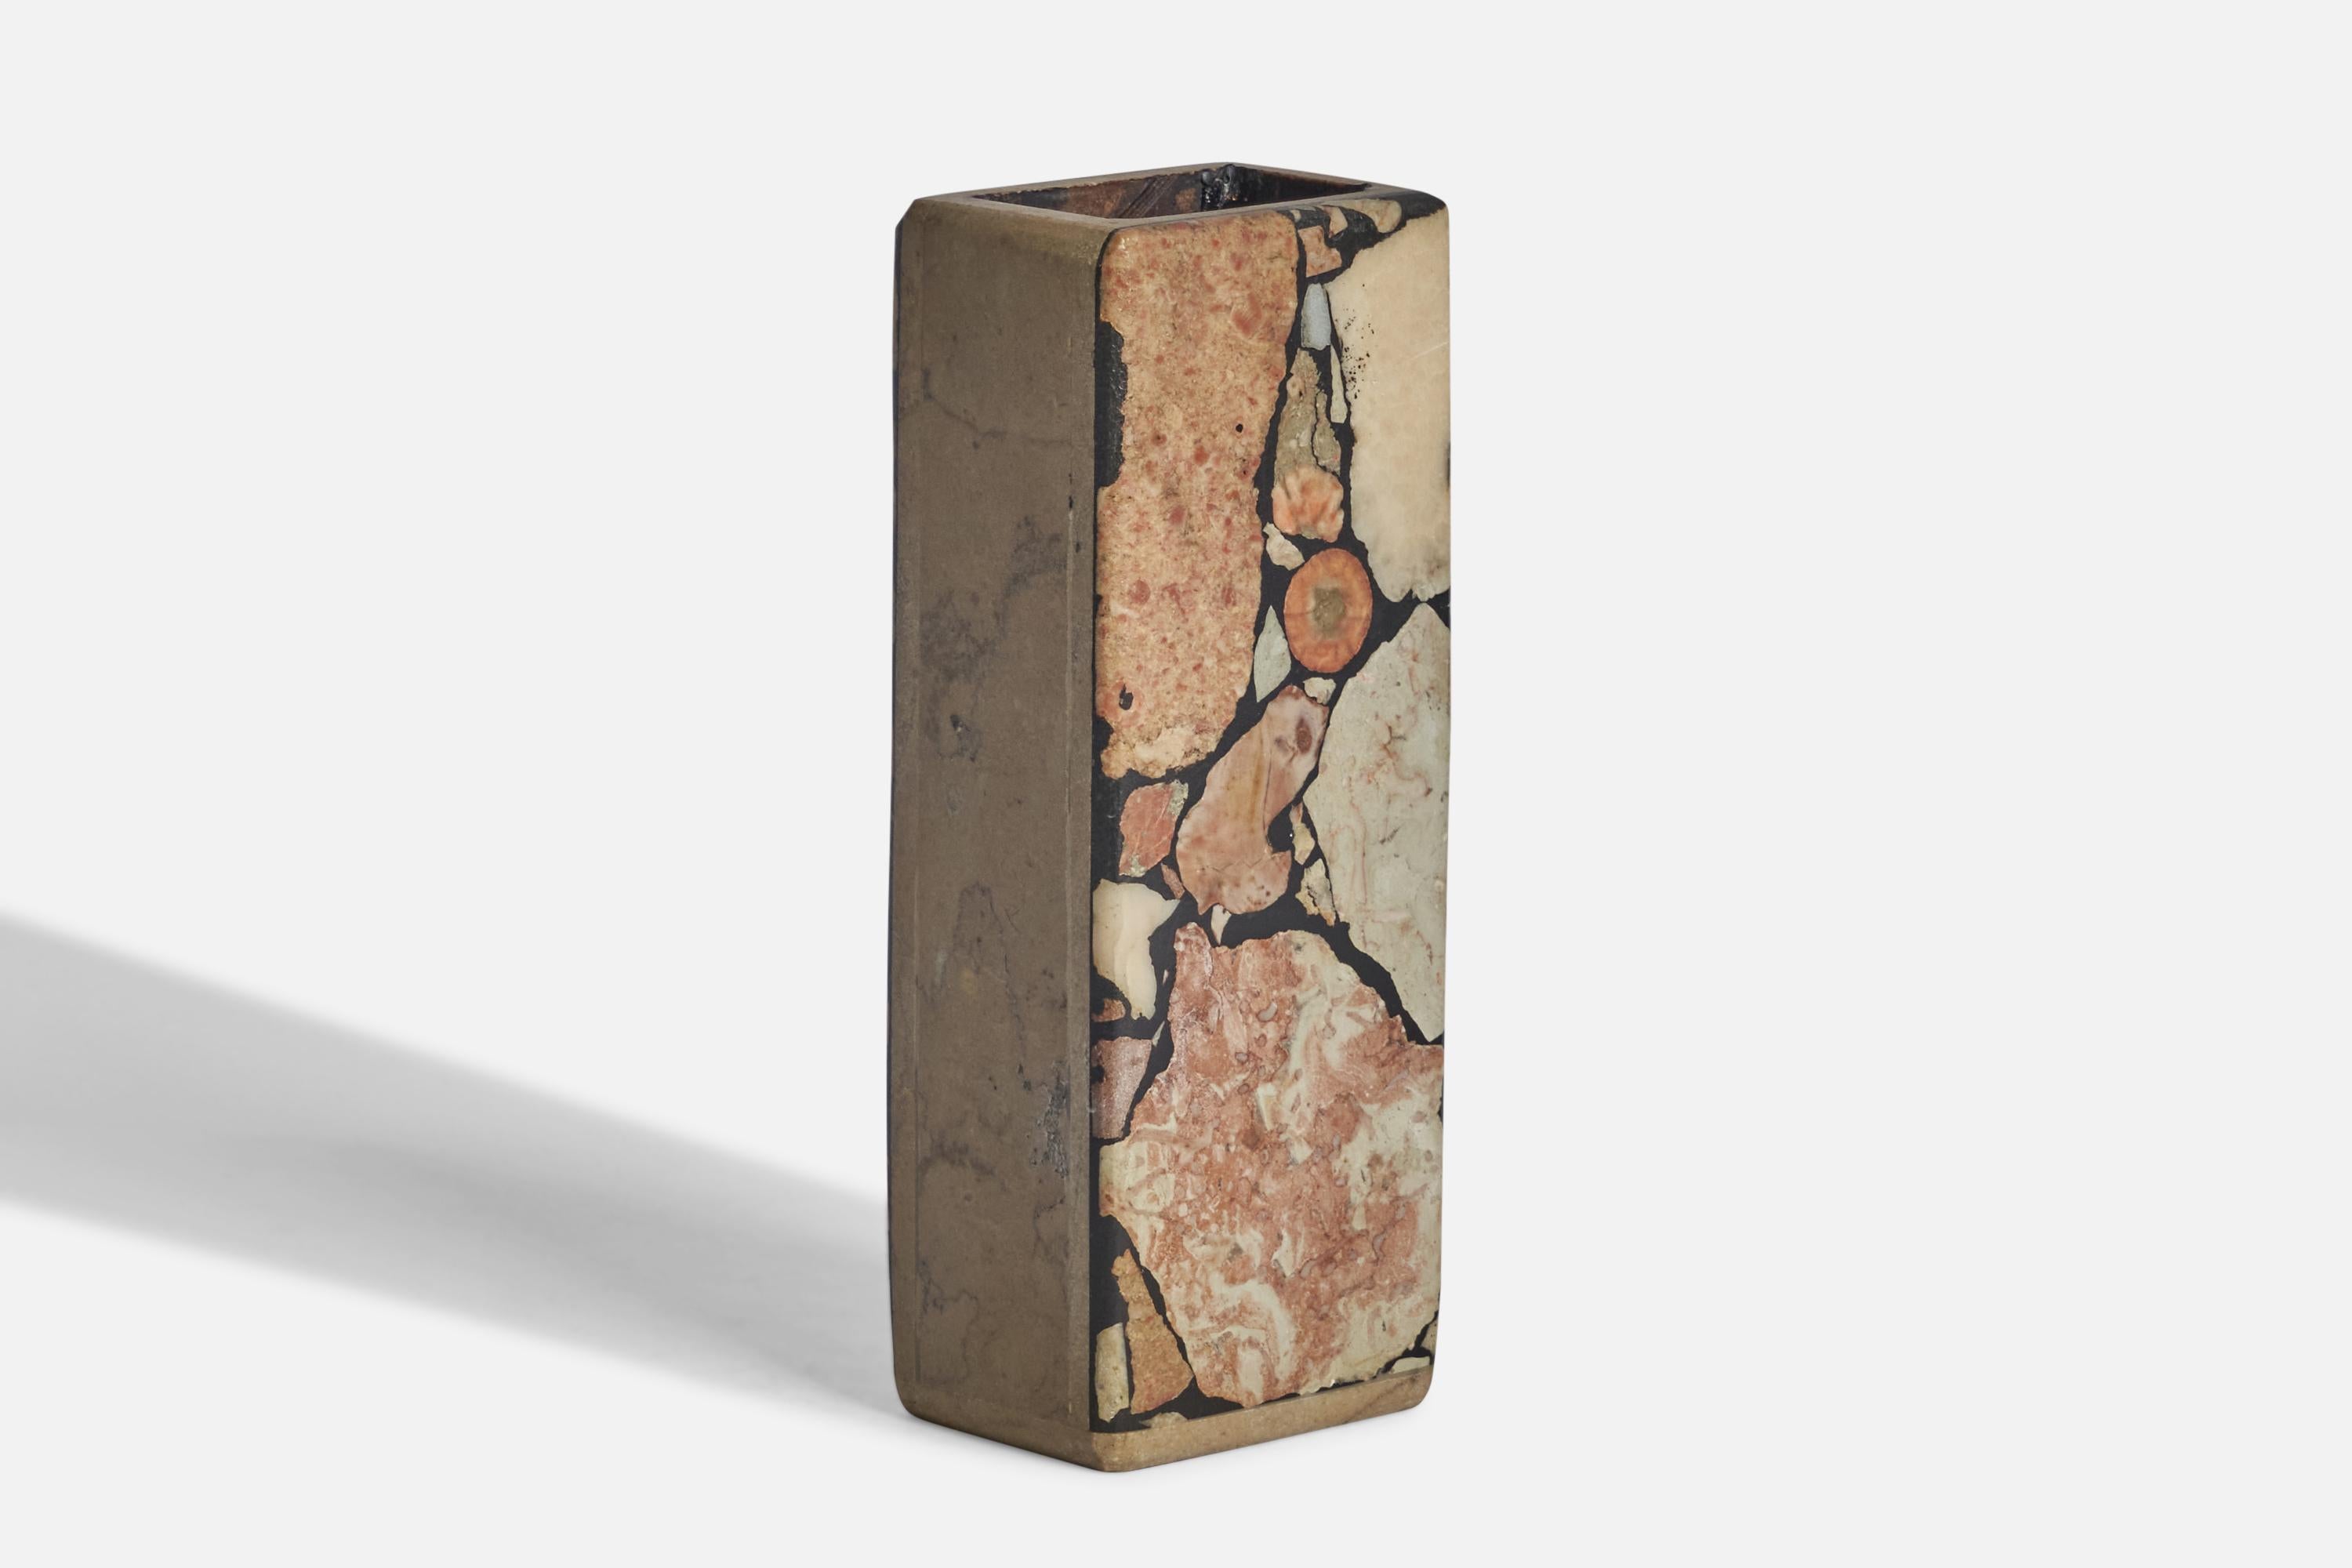 Eine Vase aus fossilem Stein, entworfen und hergestellt in Gotland, Schweden, ca. 1970er Jahre.
Aufschrift 